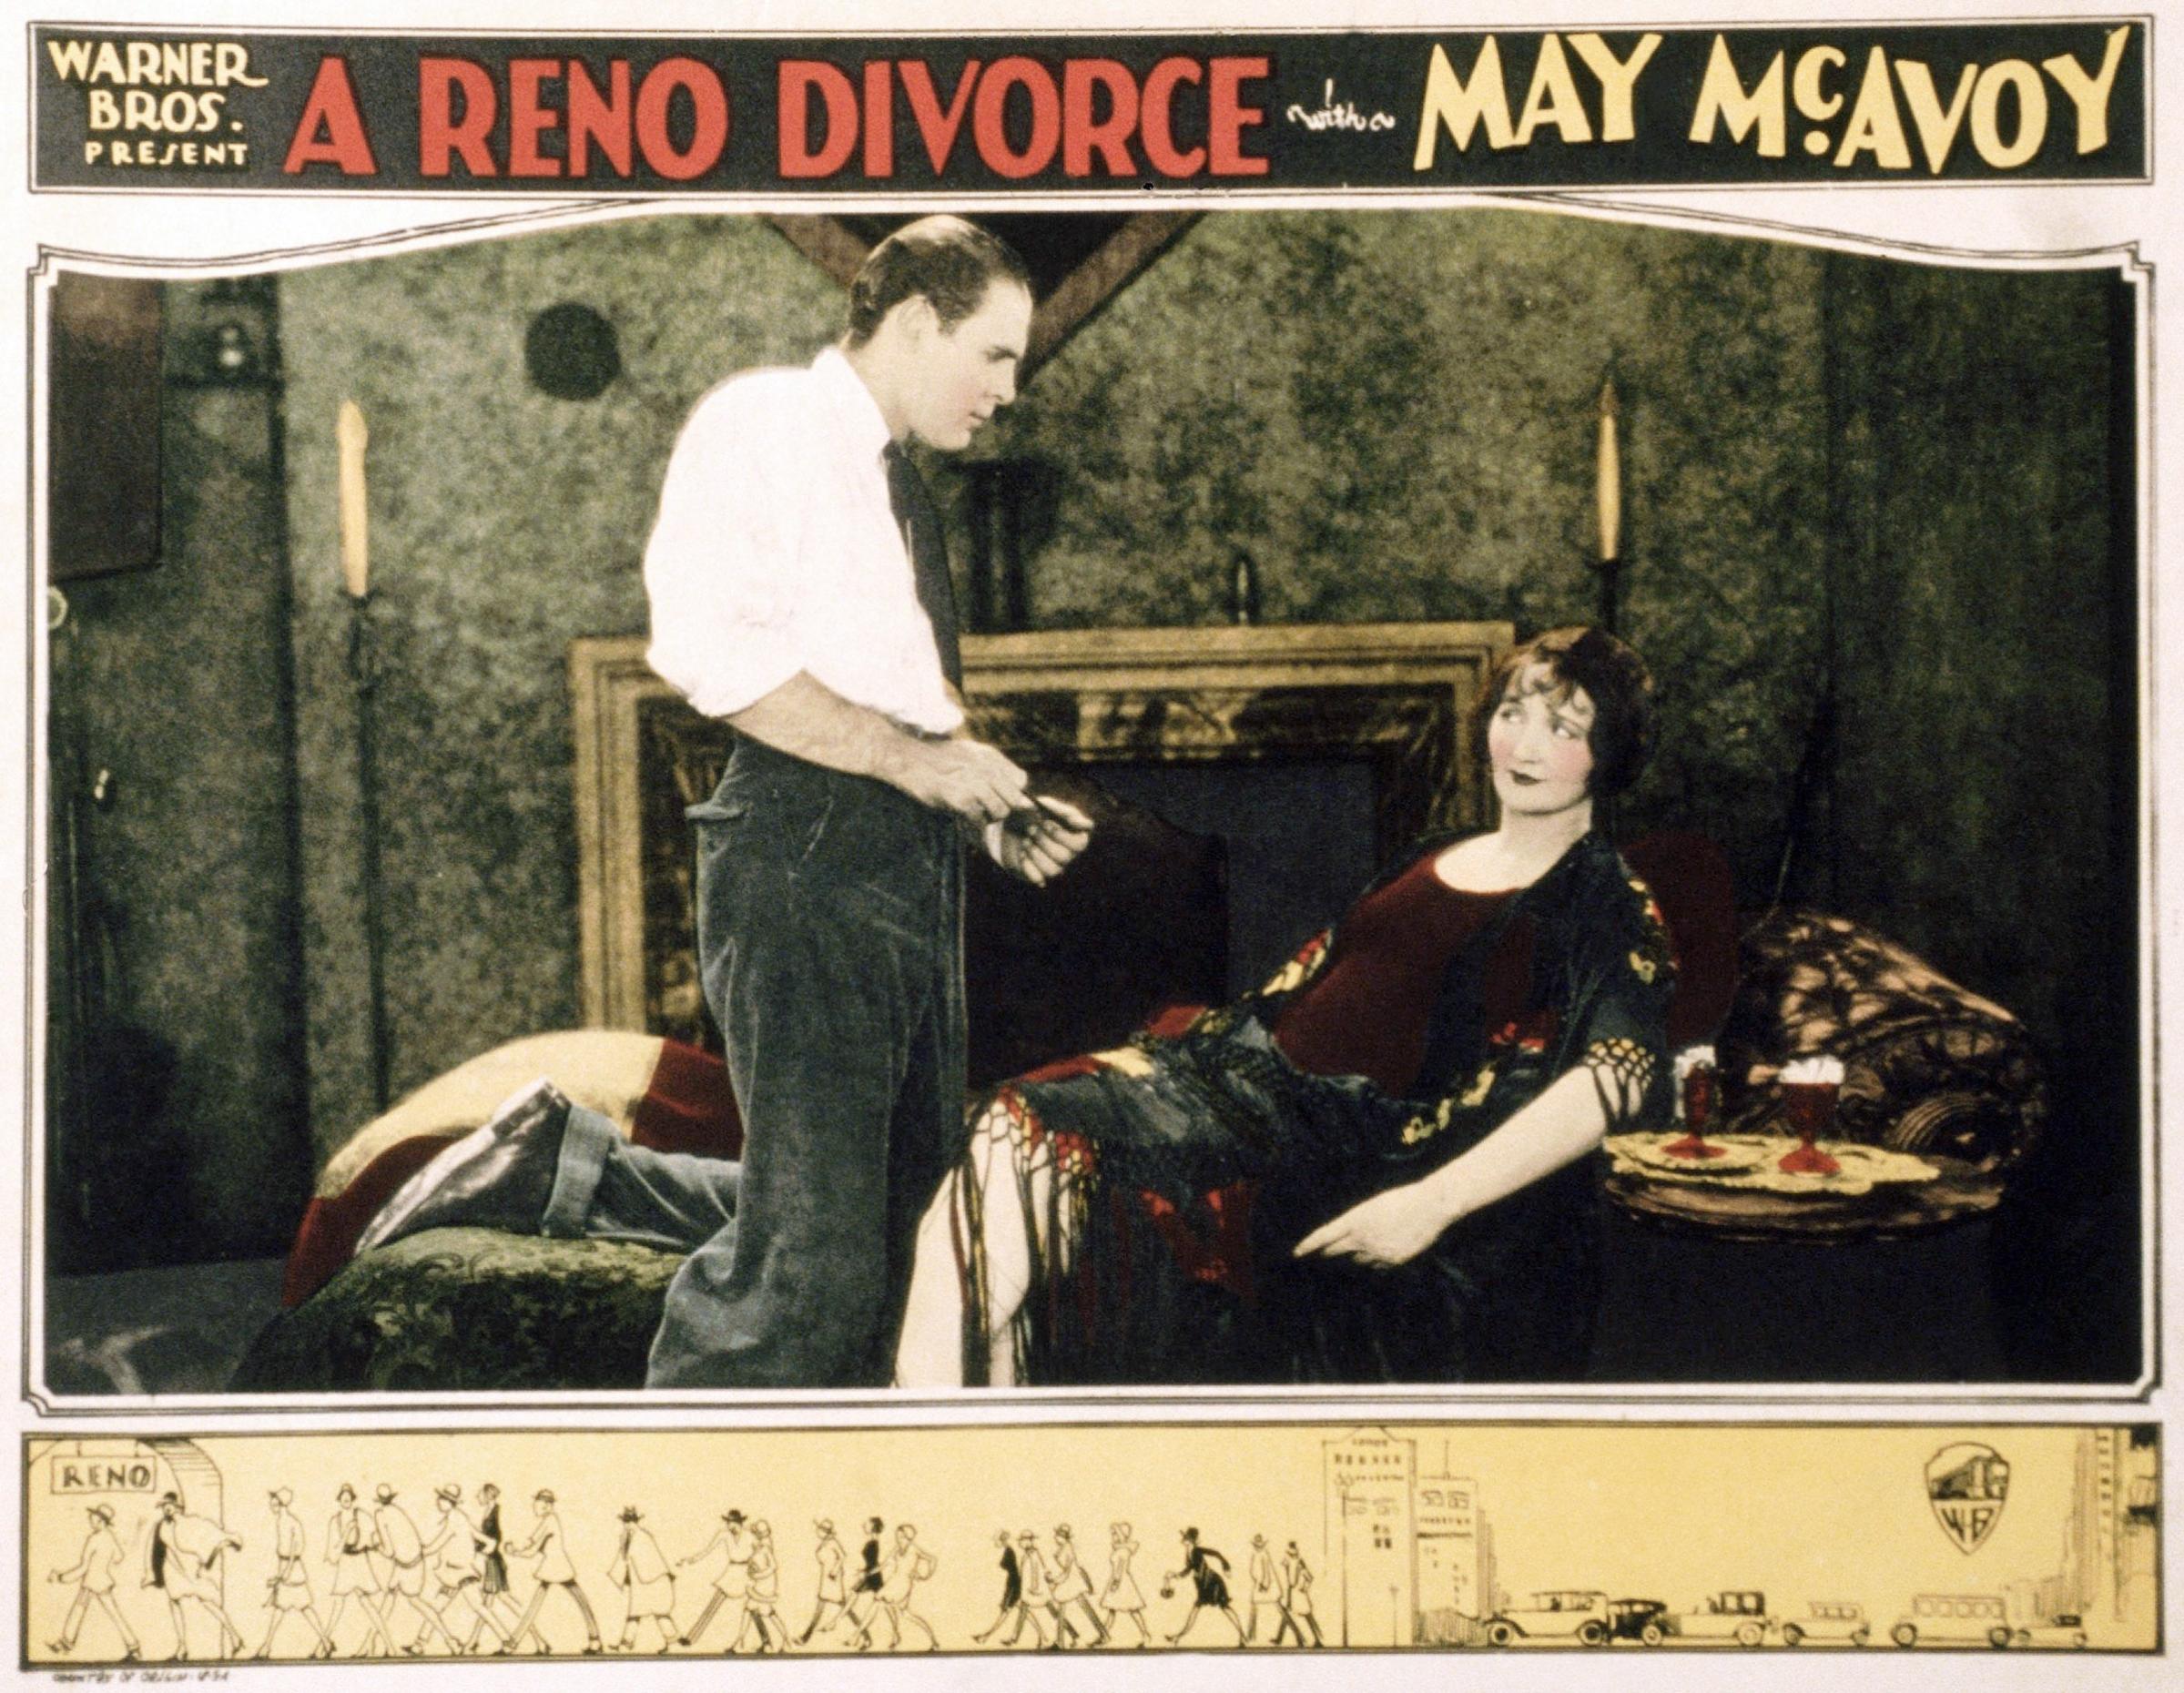 A Reno Divorce